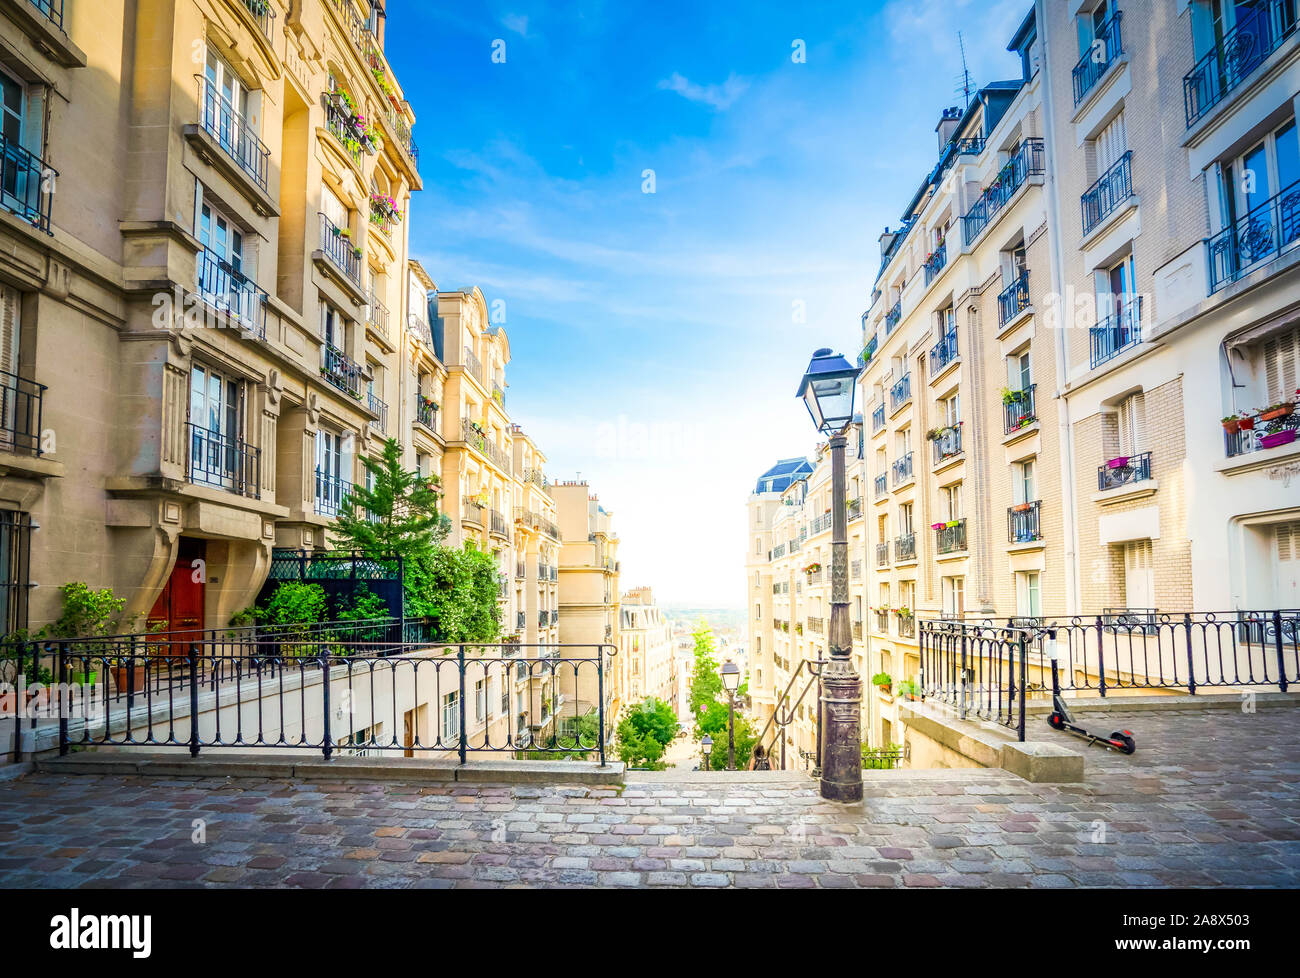 Vue sur rue avec escaliers en quart de Montmartre à Paris, France. Paysage urbain confortable de Paris à l'été. Architecture et monuments de Paris, tonique Banque D'Images